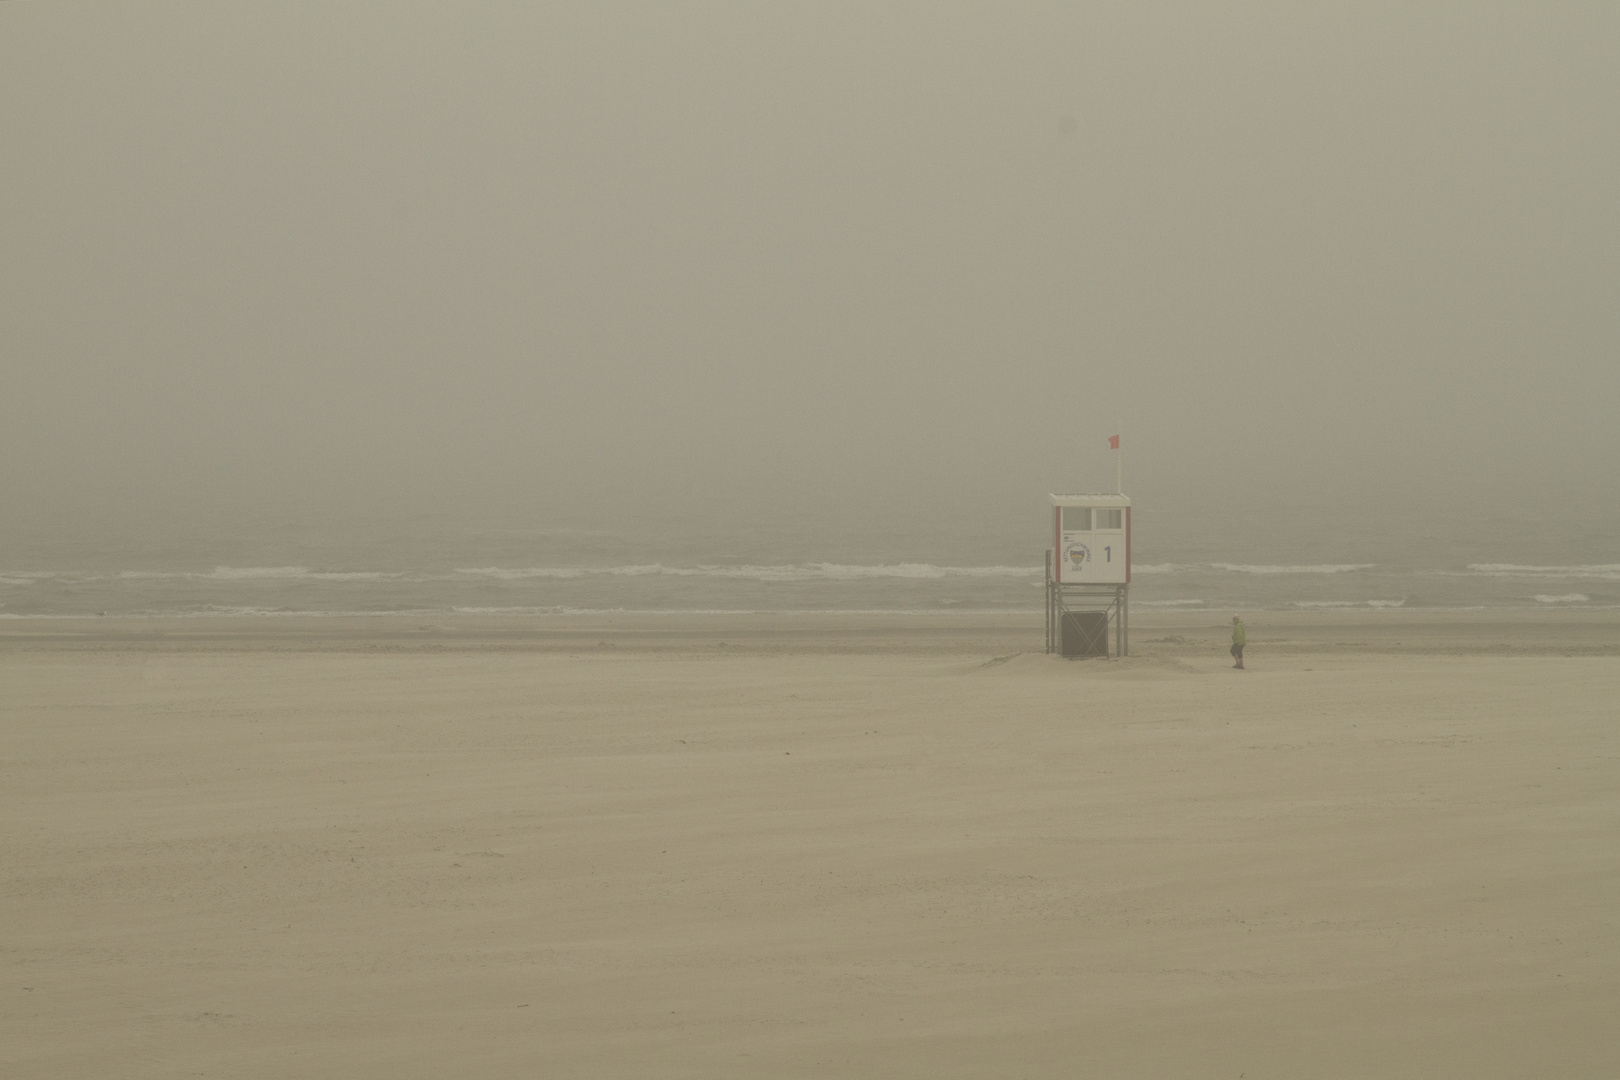 A foggy day on the beach